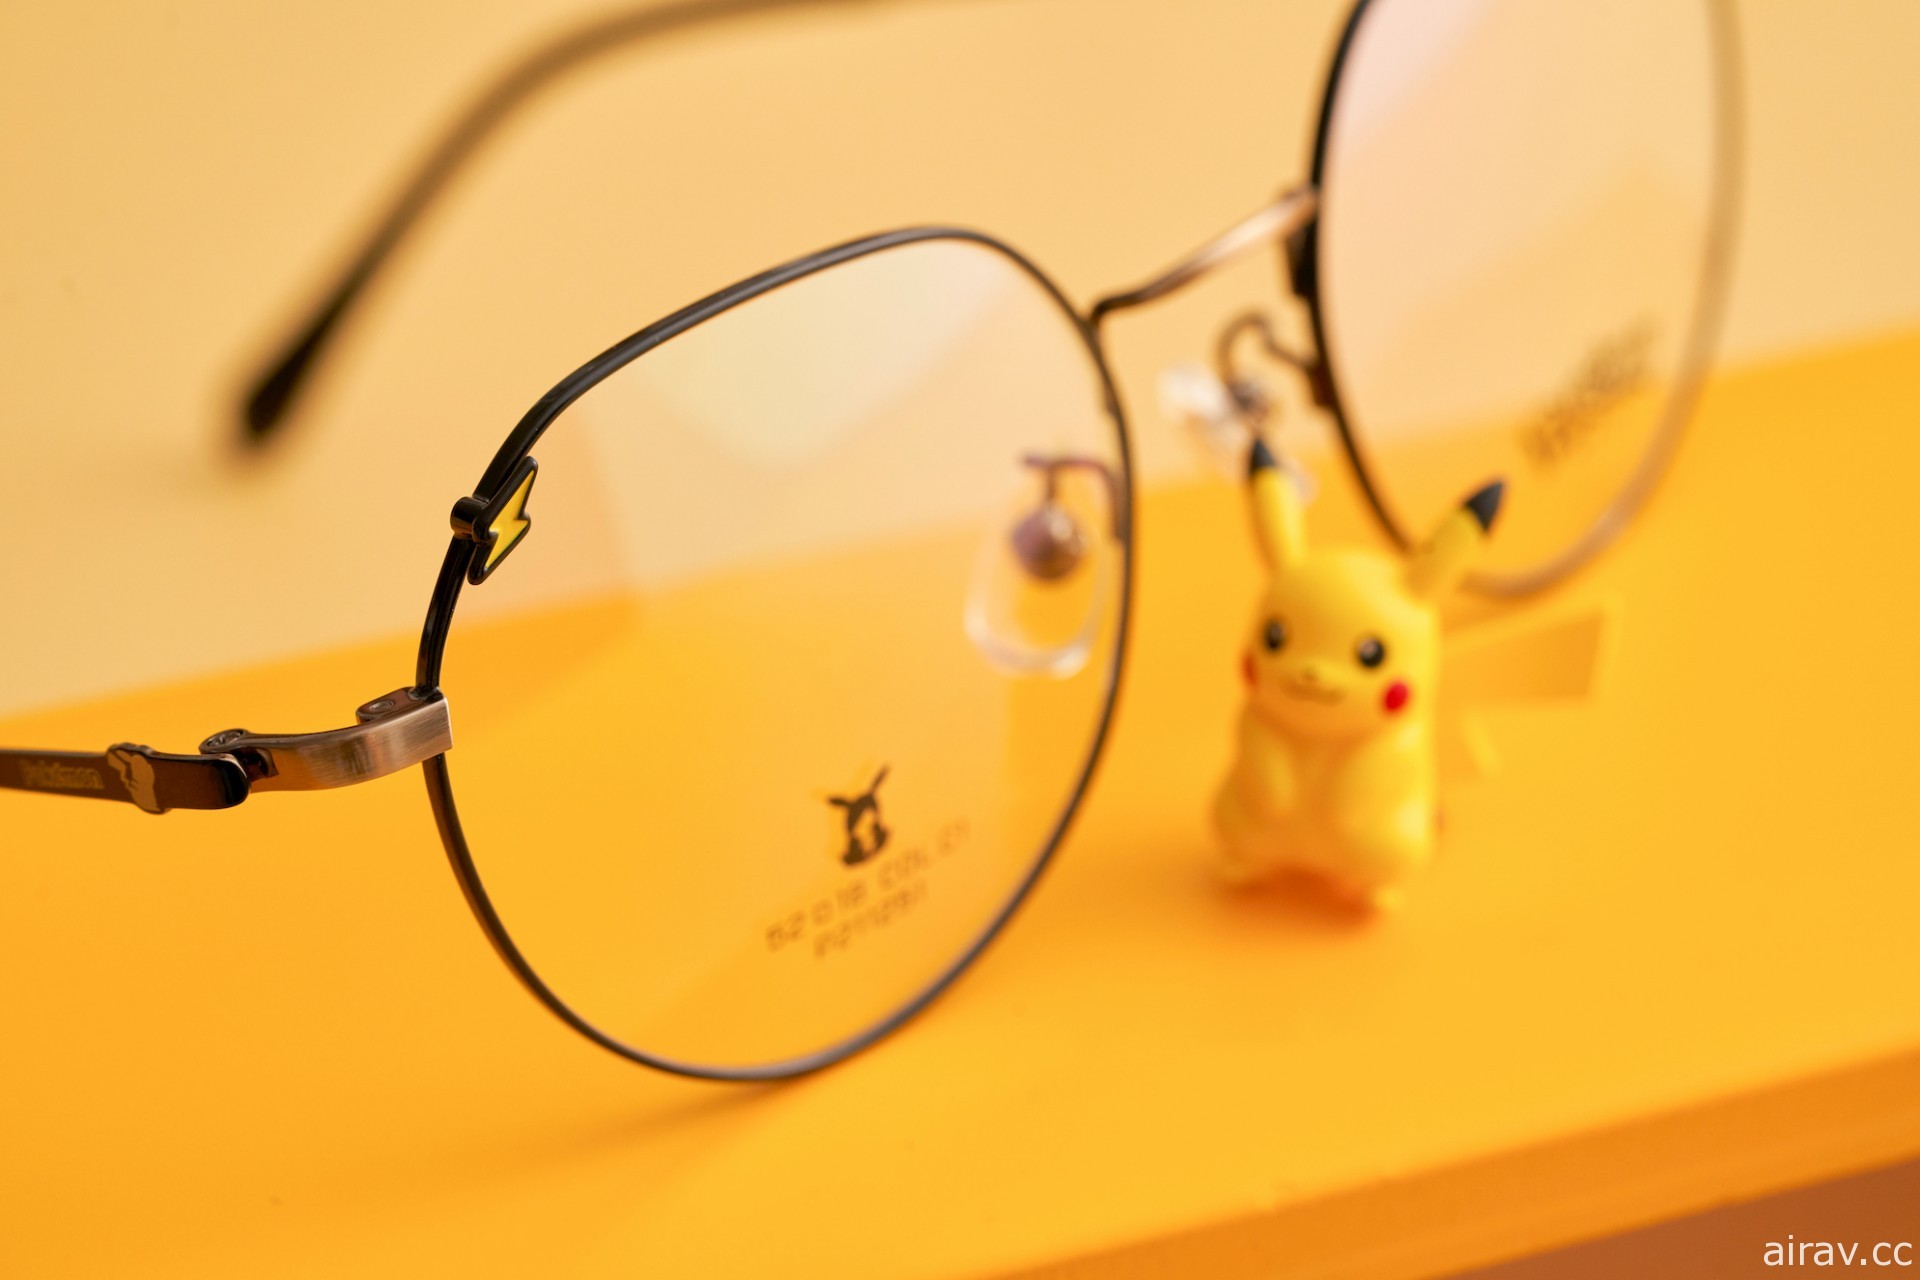 小林眼鏡 ×《寶可夢》聯名鏡架即日起正式推出 皮卡丘眼鏡展示架同步上市